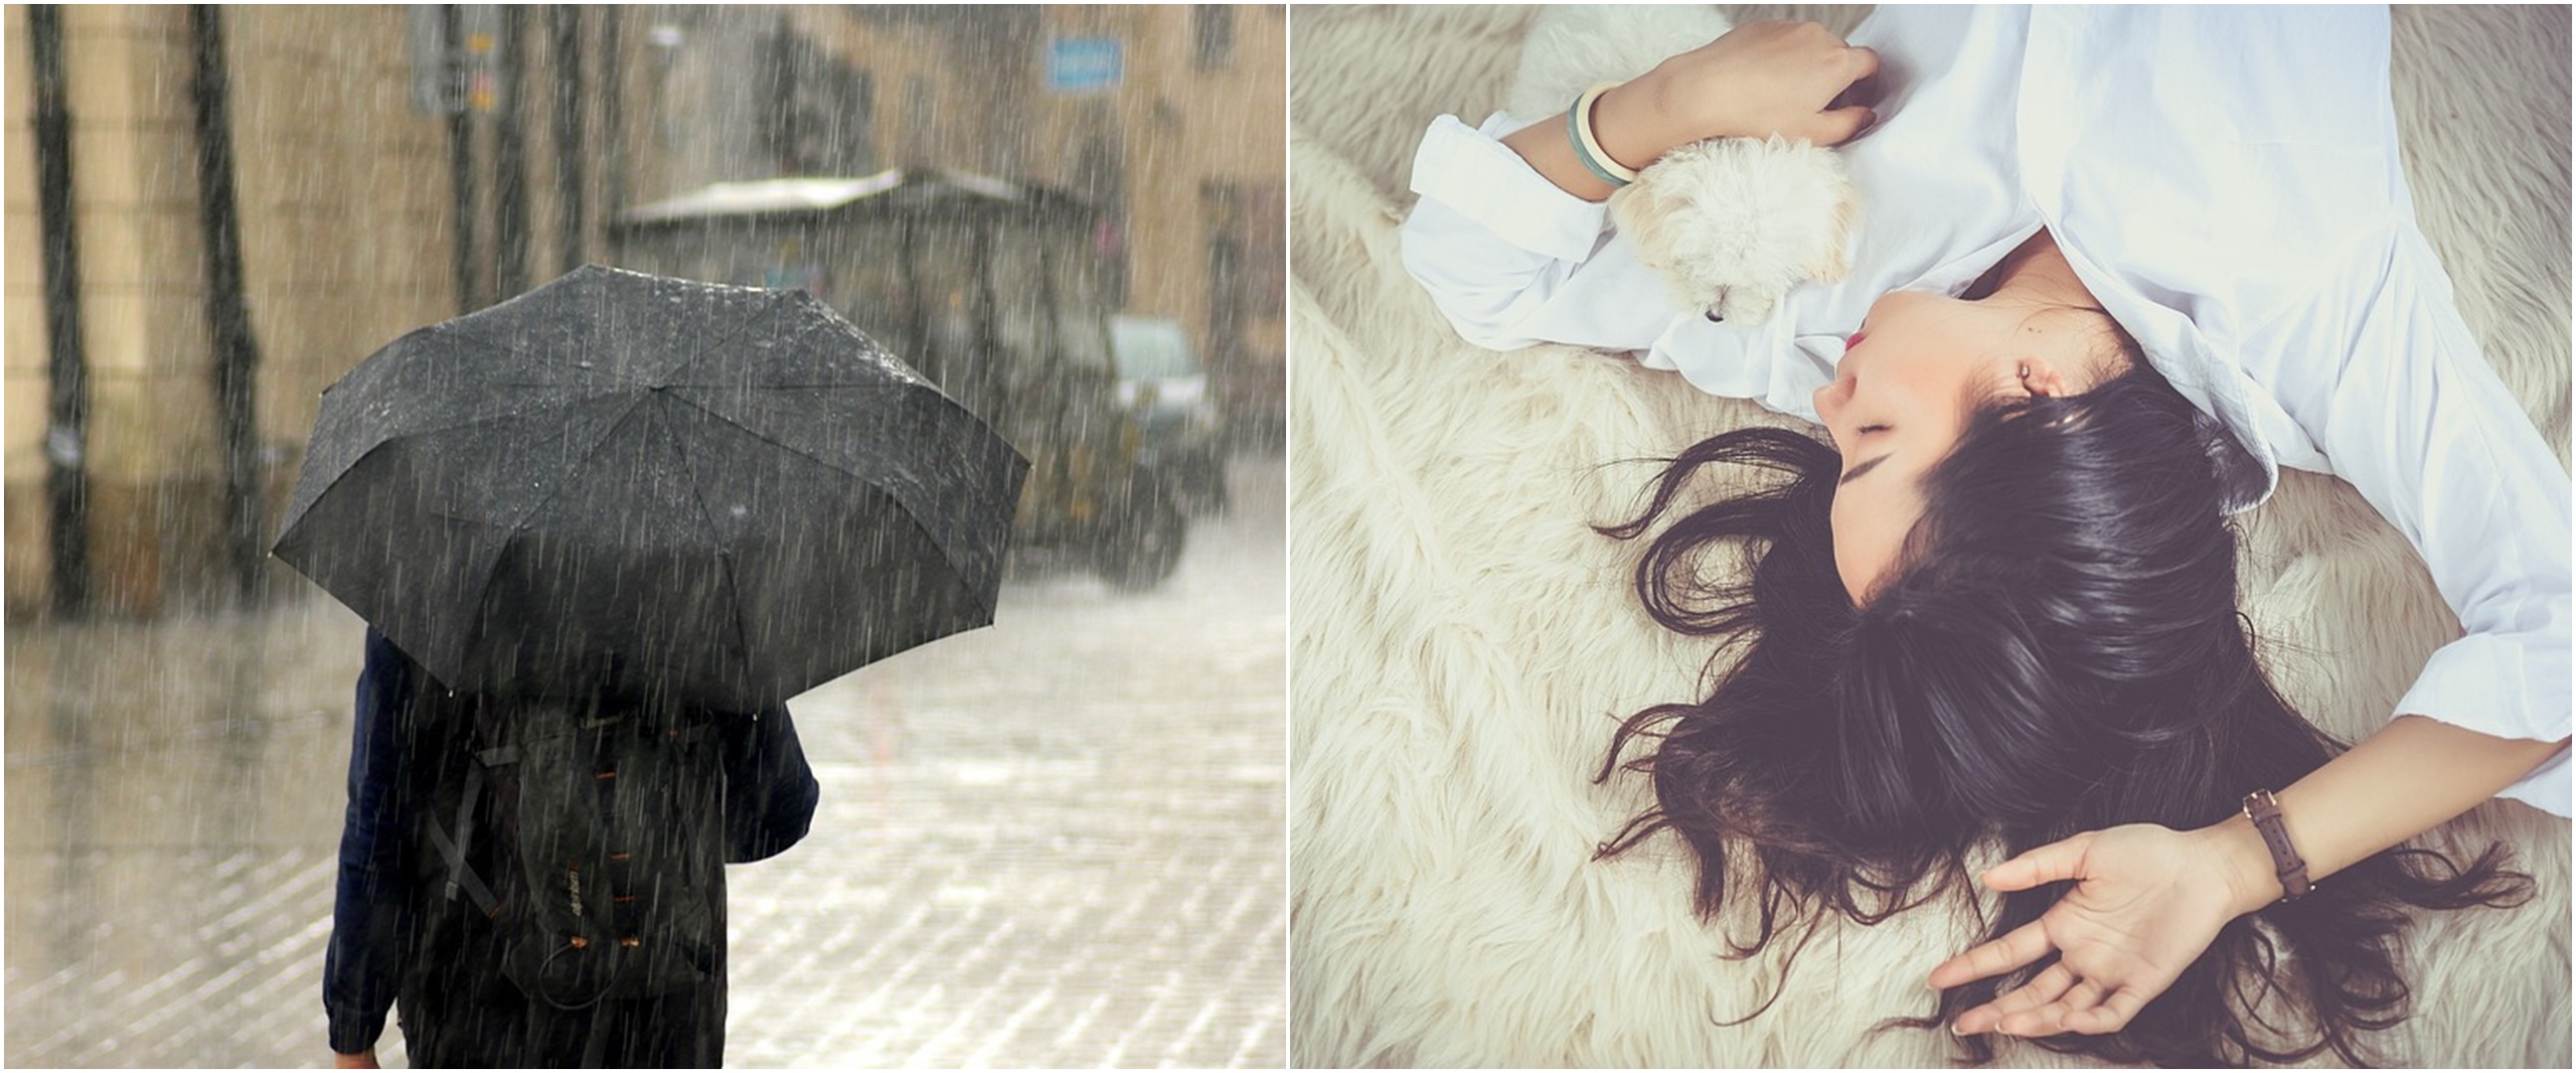 11 Arti mimpi memakai payung, bisa jadi pertanda baik ataupun buruk